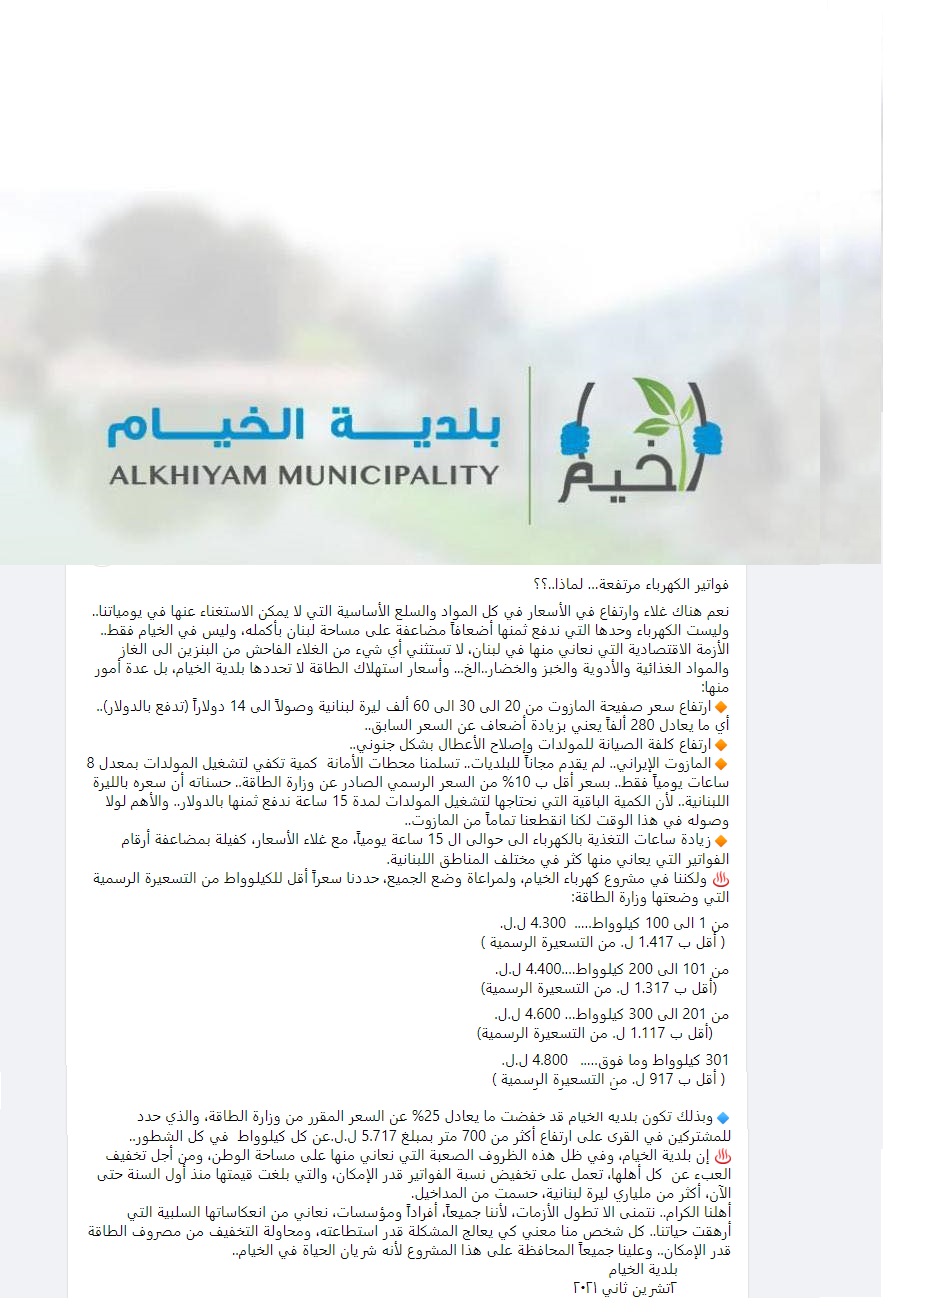 البيان الصادر اليوم عن بلدية الخيام  بعد الدعوة إلى عدم دفع فواتير اشتراك الكهرباء